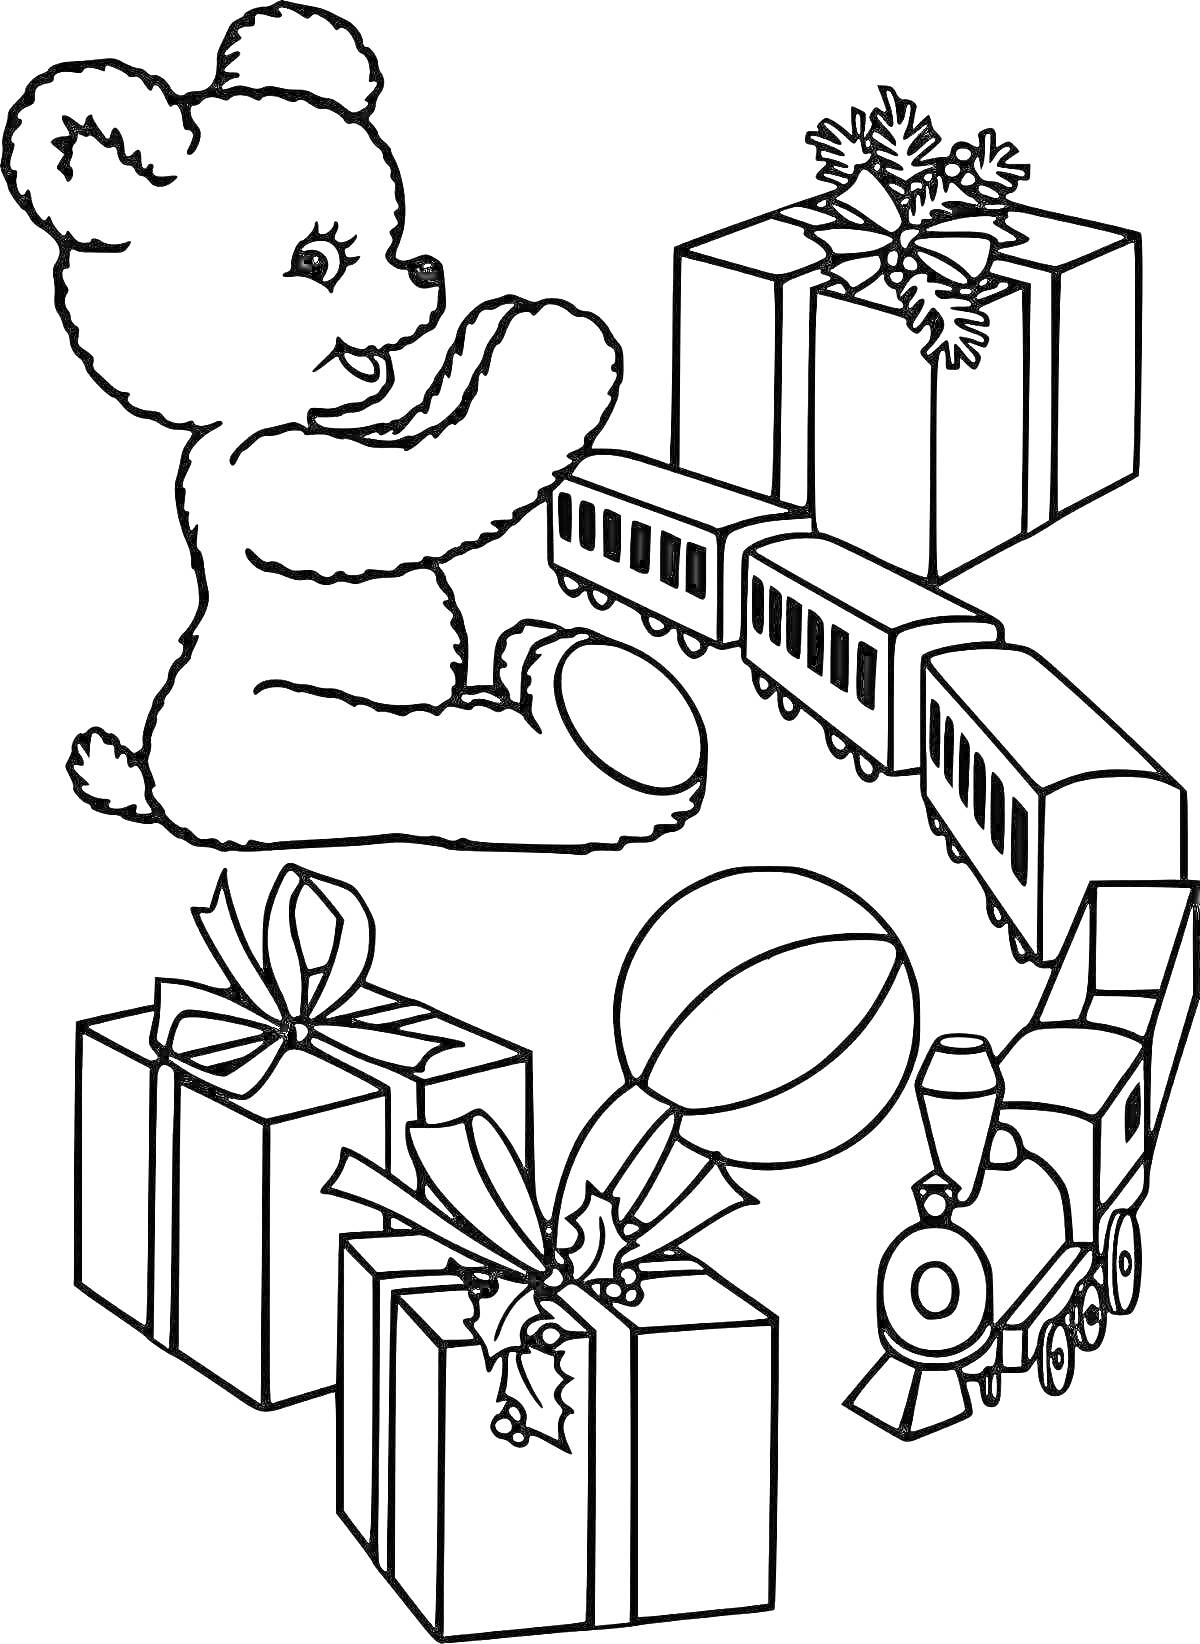 Раскраска Мишка, поезд, мяч и подарки